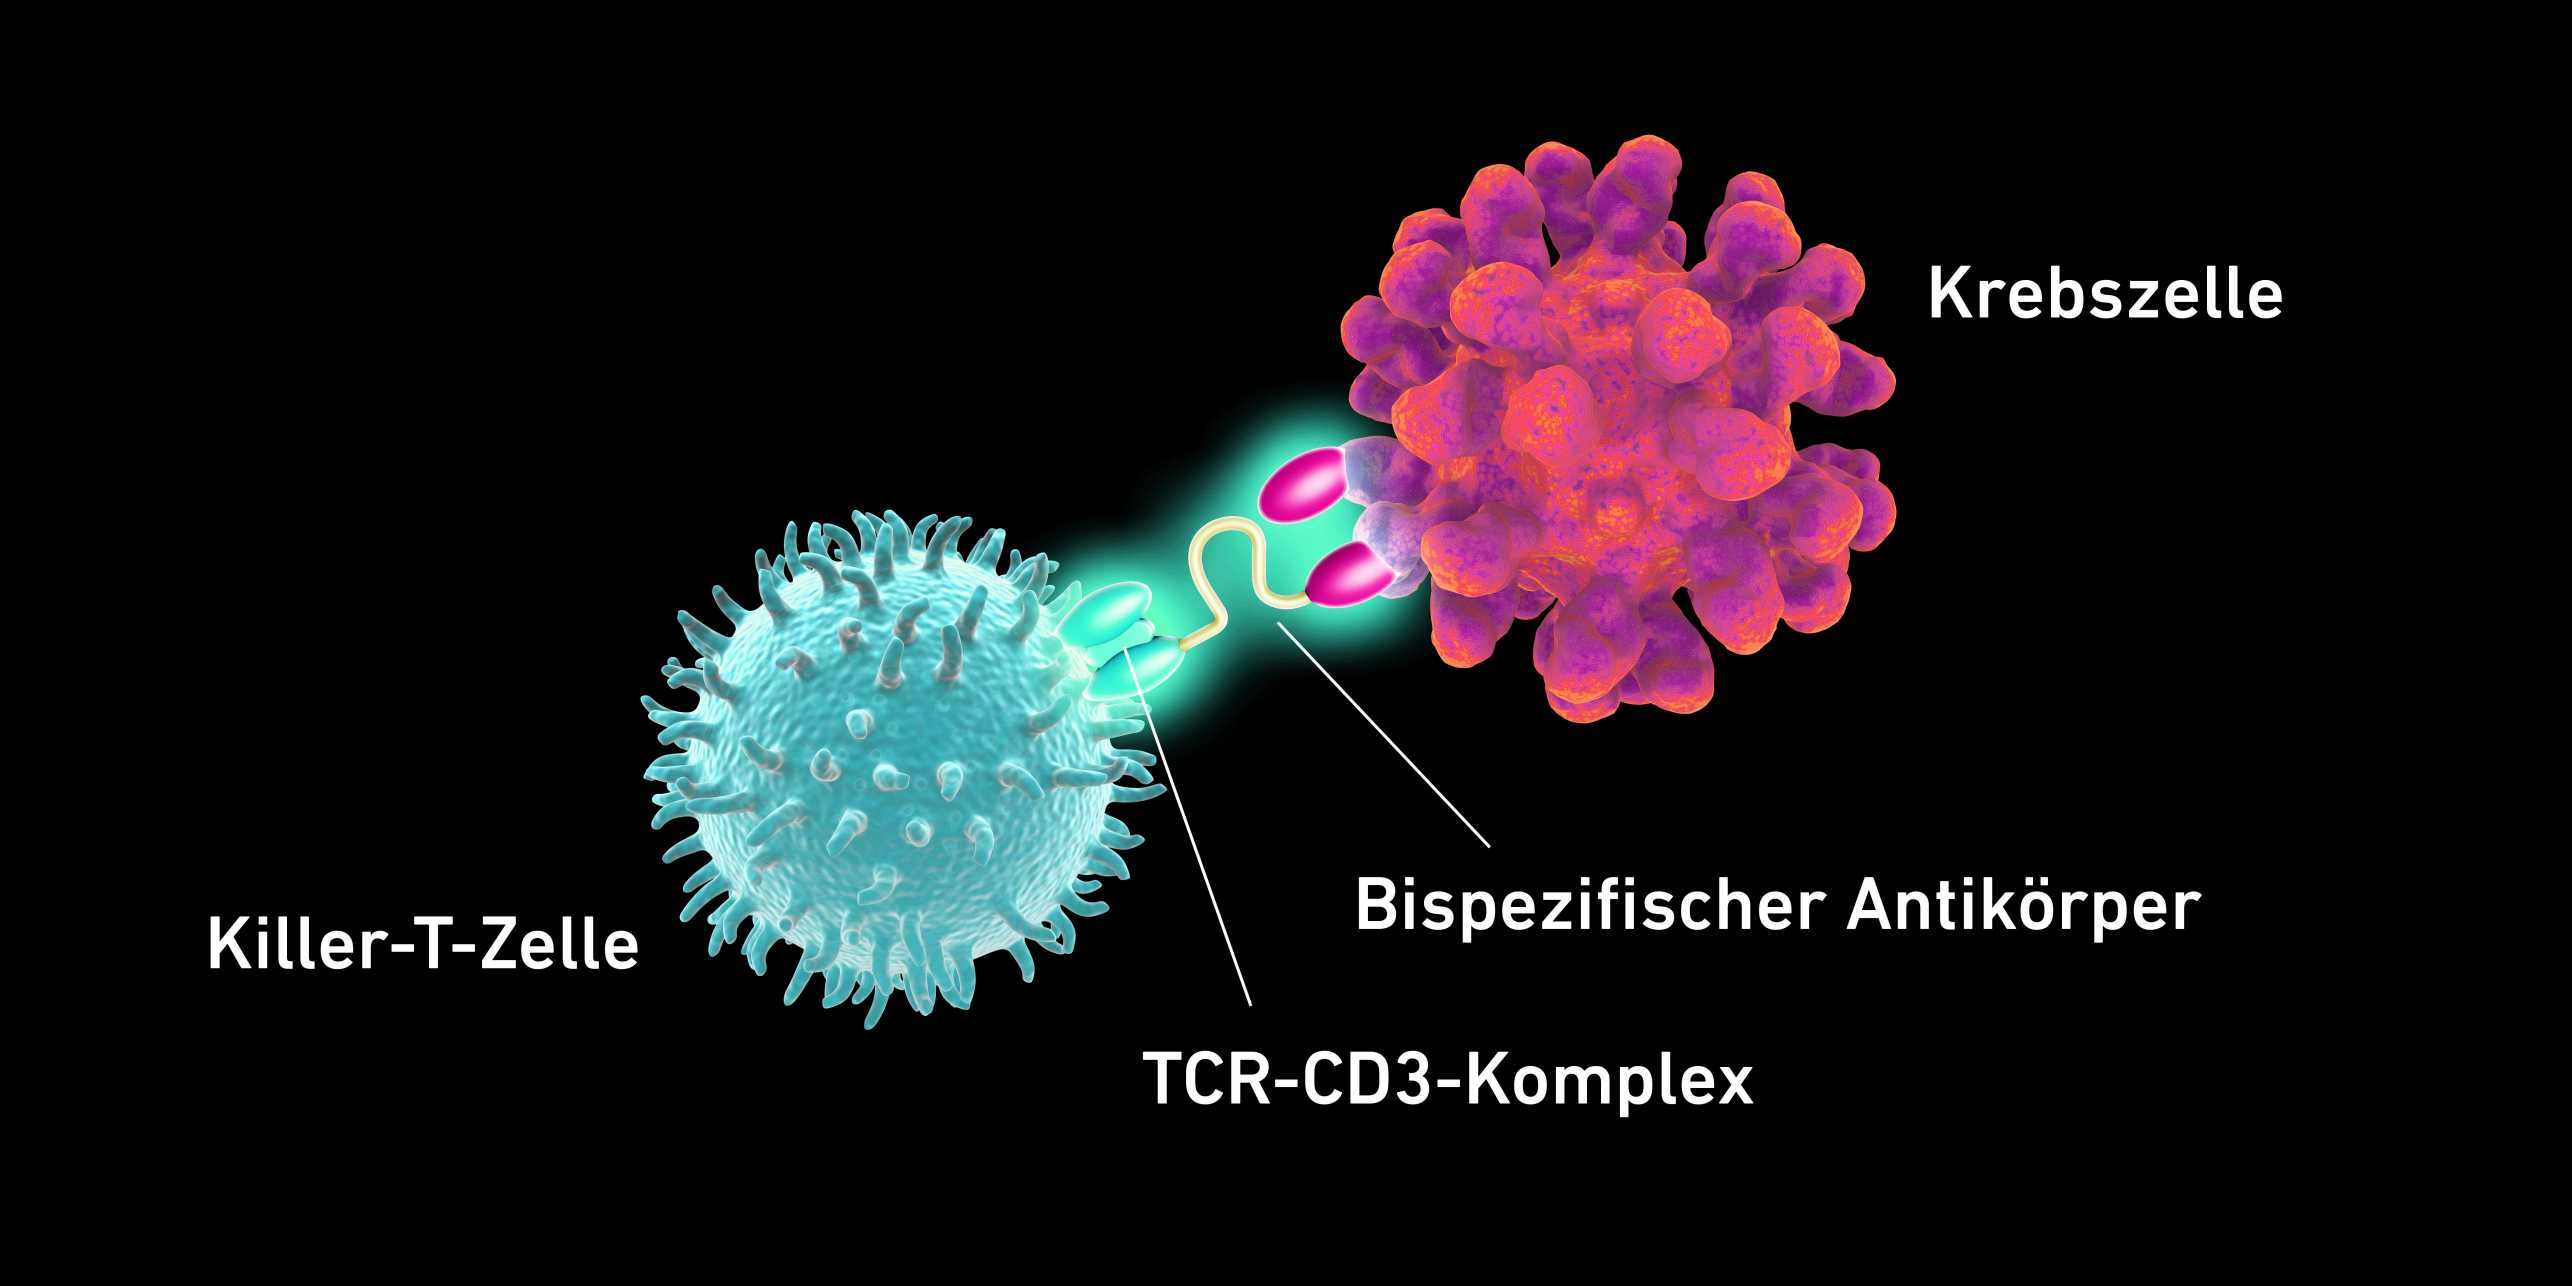 Vergr?sserte Ansicht: Grafik, die den Zusammenhang zwischen der Killer-T-Zelle und der Krebszelle zeigt